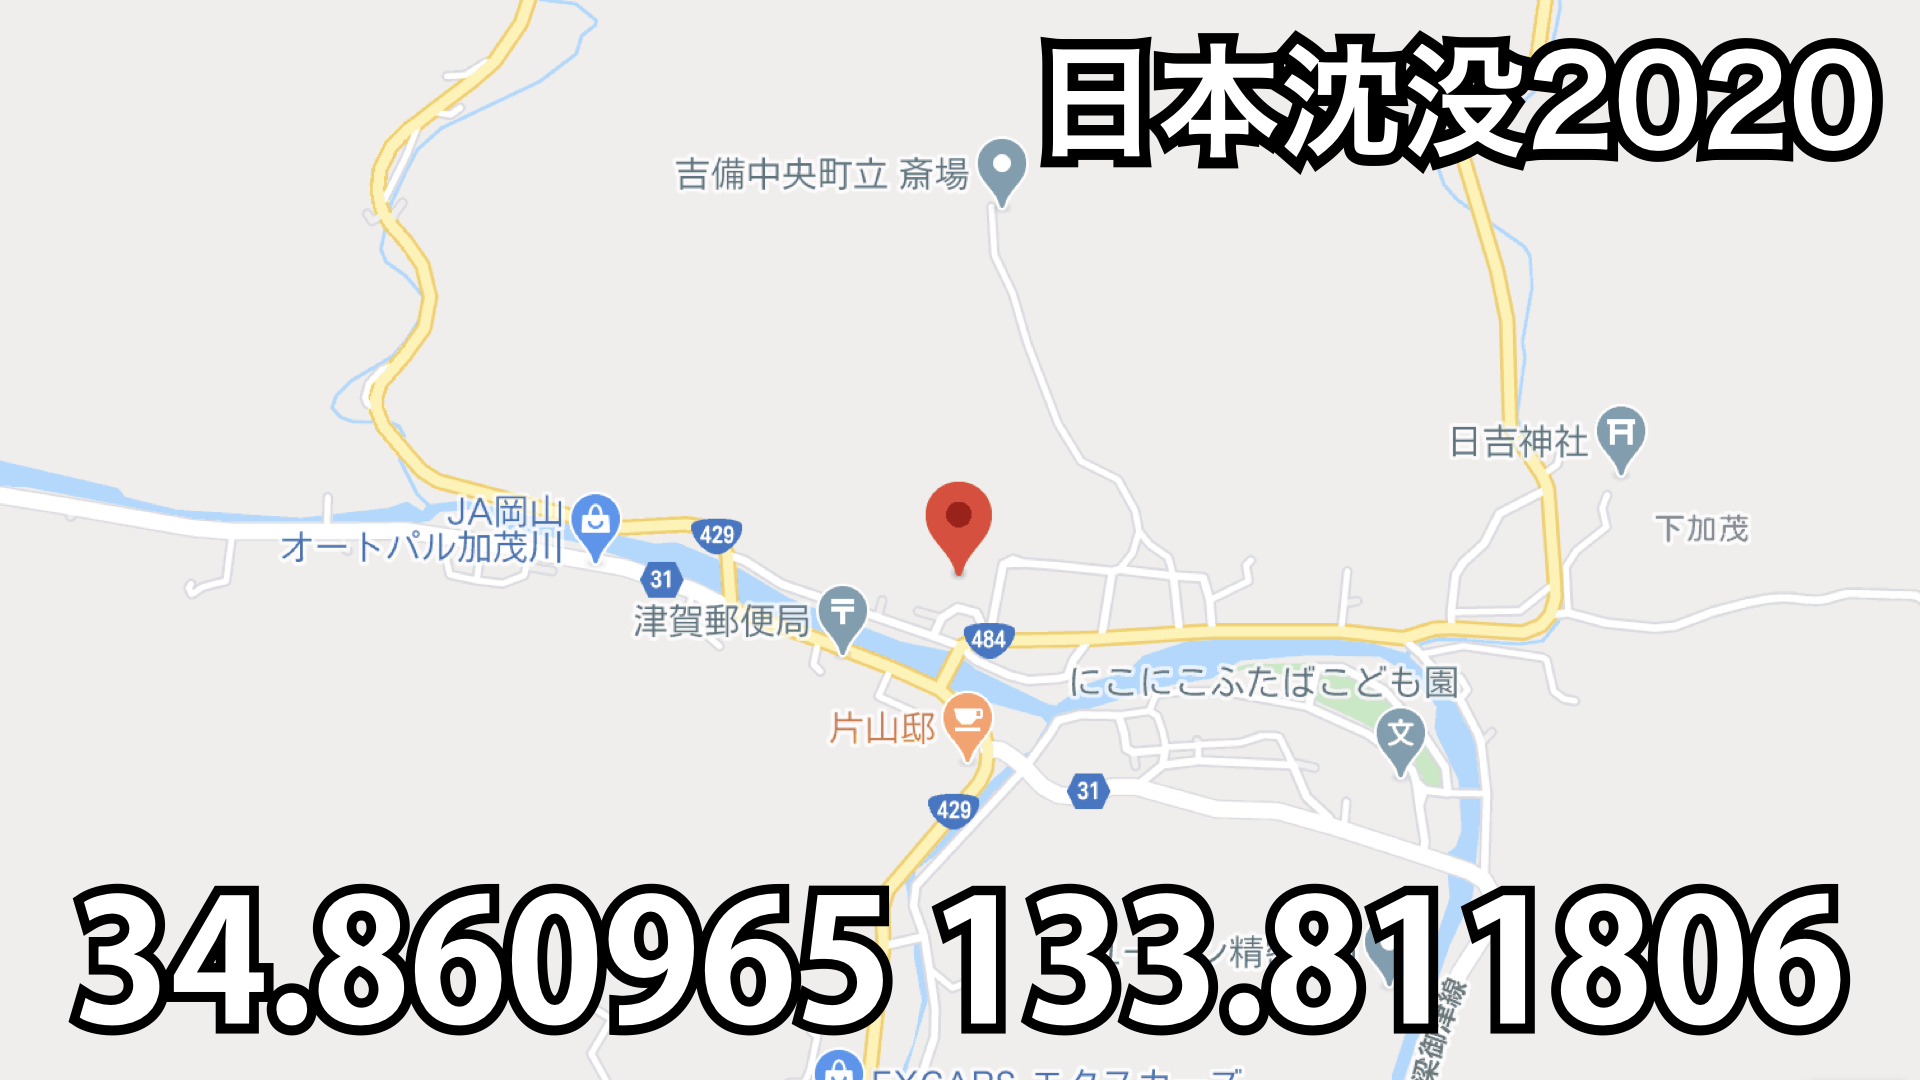 34 133 日本沈没 Netflixアニメ の座標はどこ あの車両はなに 自然災害レスキュー Rescue4th Com